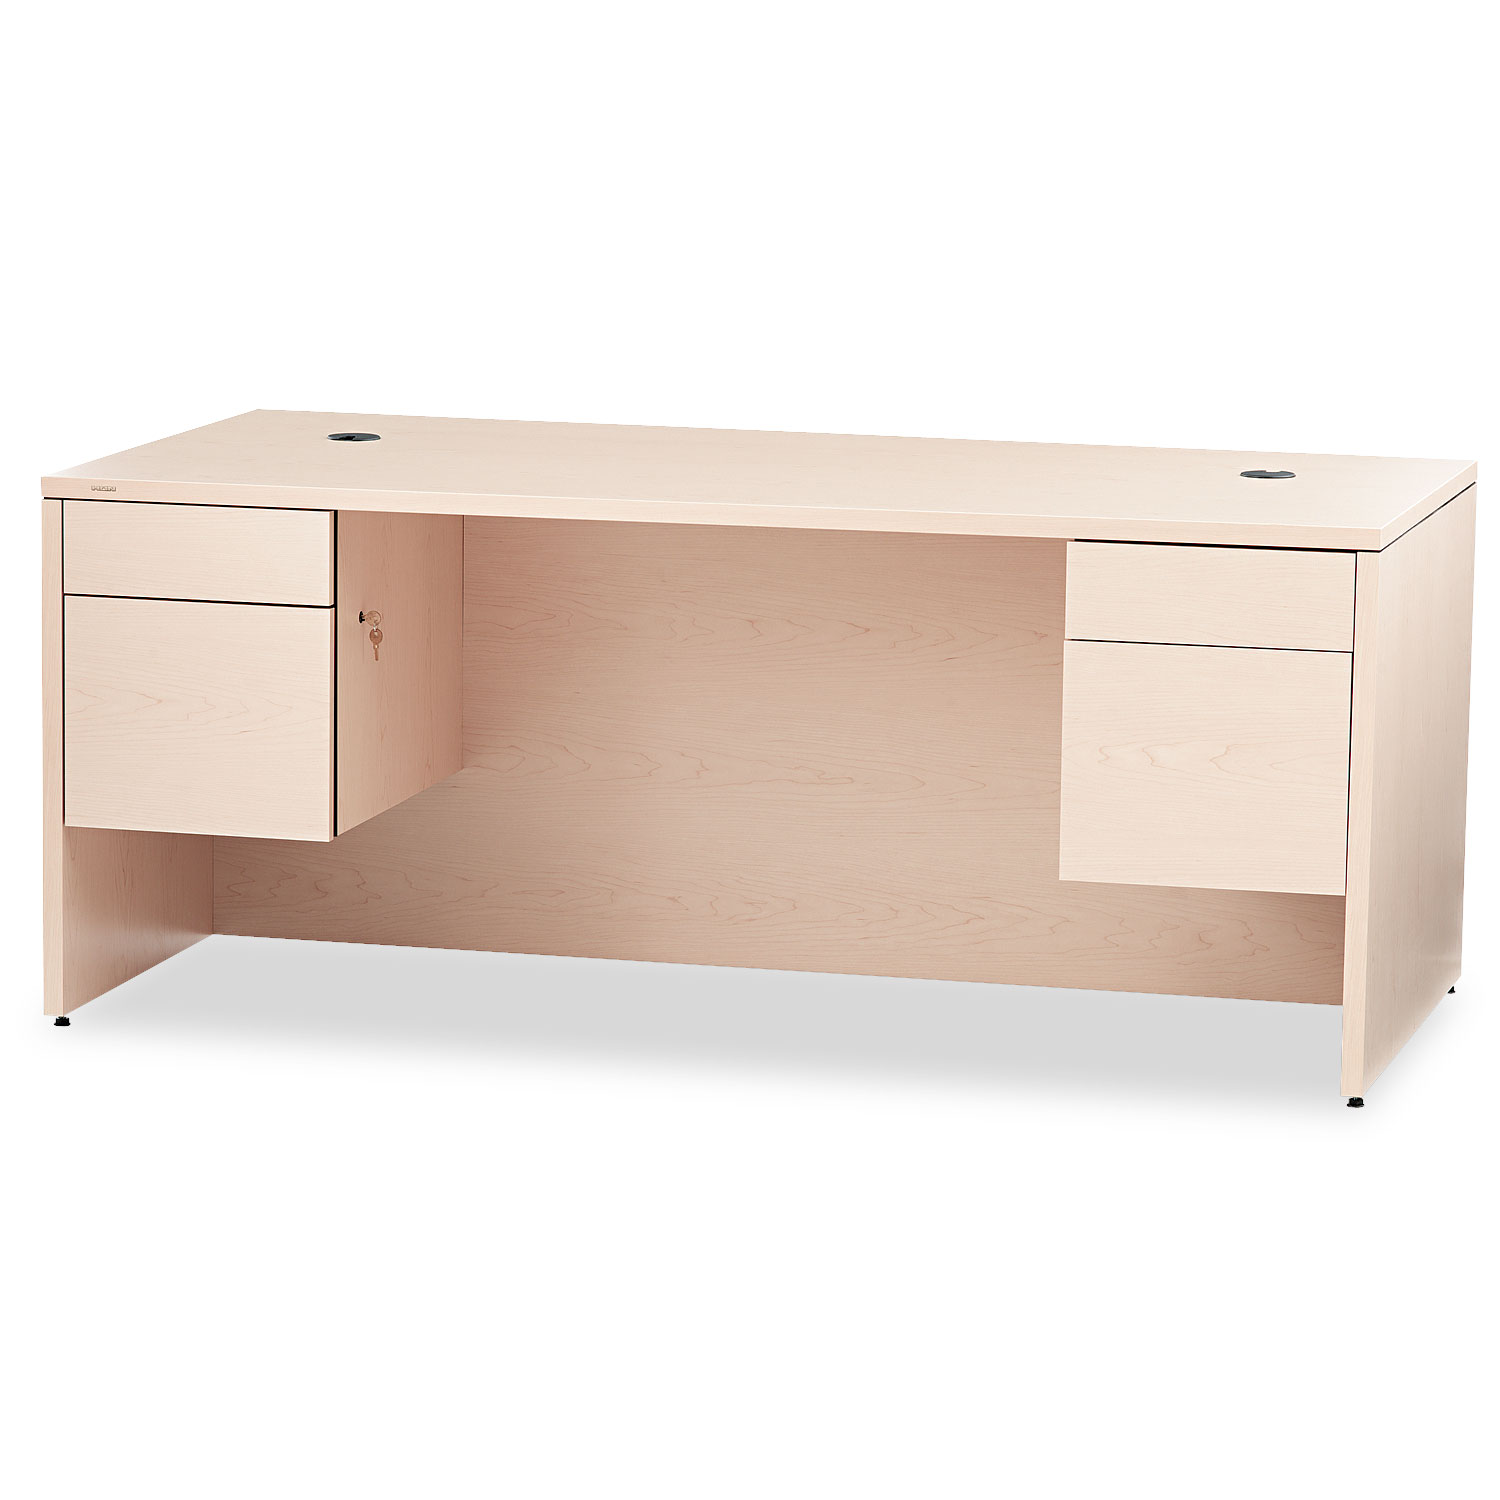  HON H10593.DD 10500 Series 3/4 Height Double Pedestal Desk, 72w x 36d x 29.5h, Natural Maple (HON10593DD) 